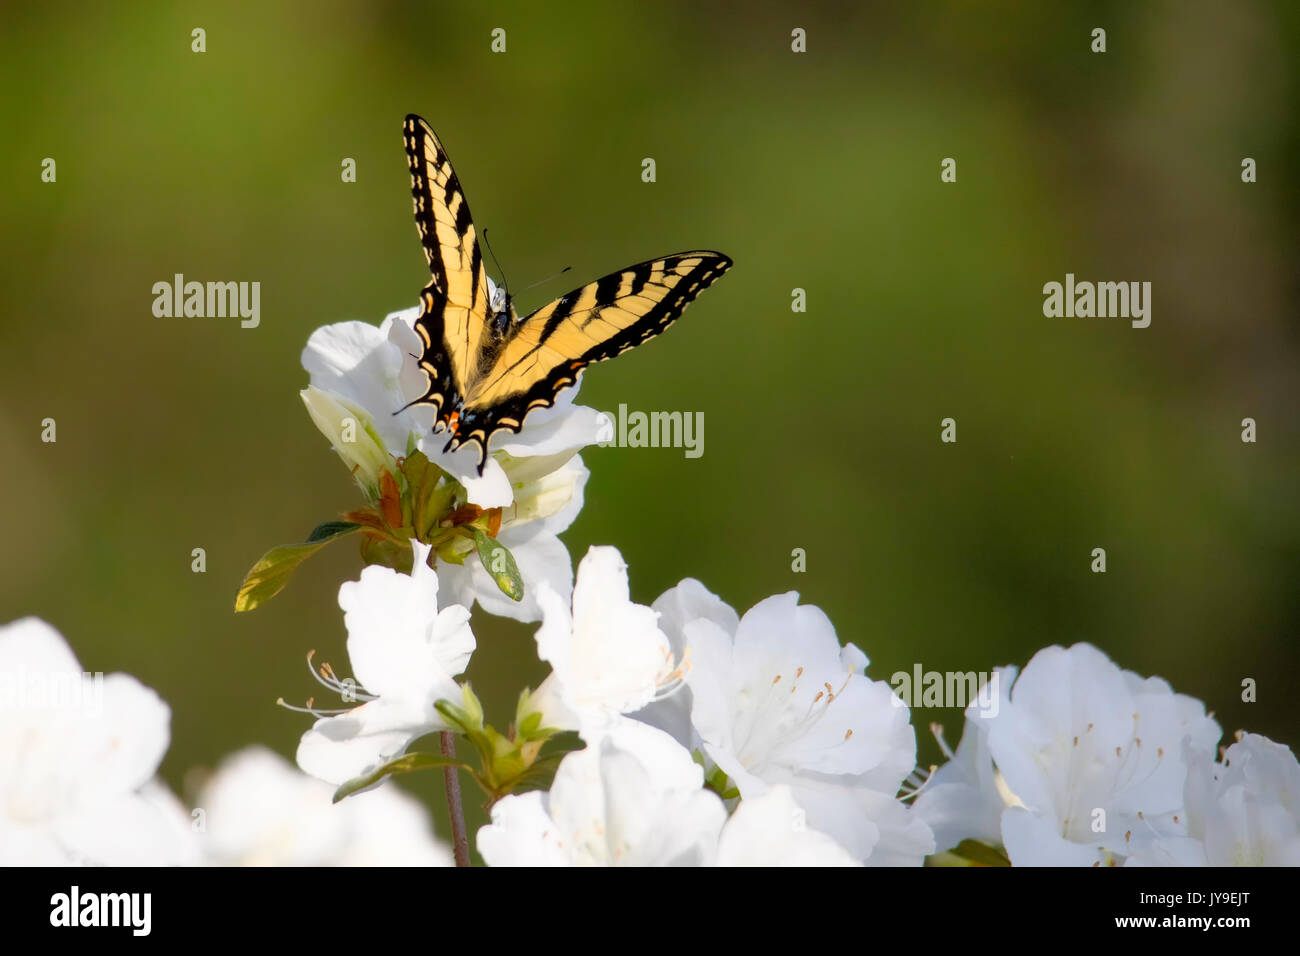 Tigre oriental especie se alimenta de mariposas blancas florecen azaleas Foto de stock